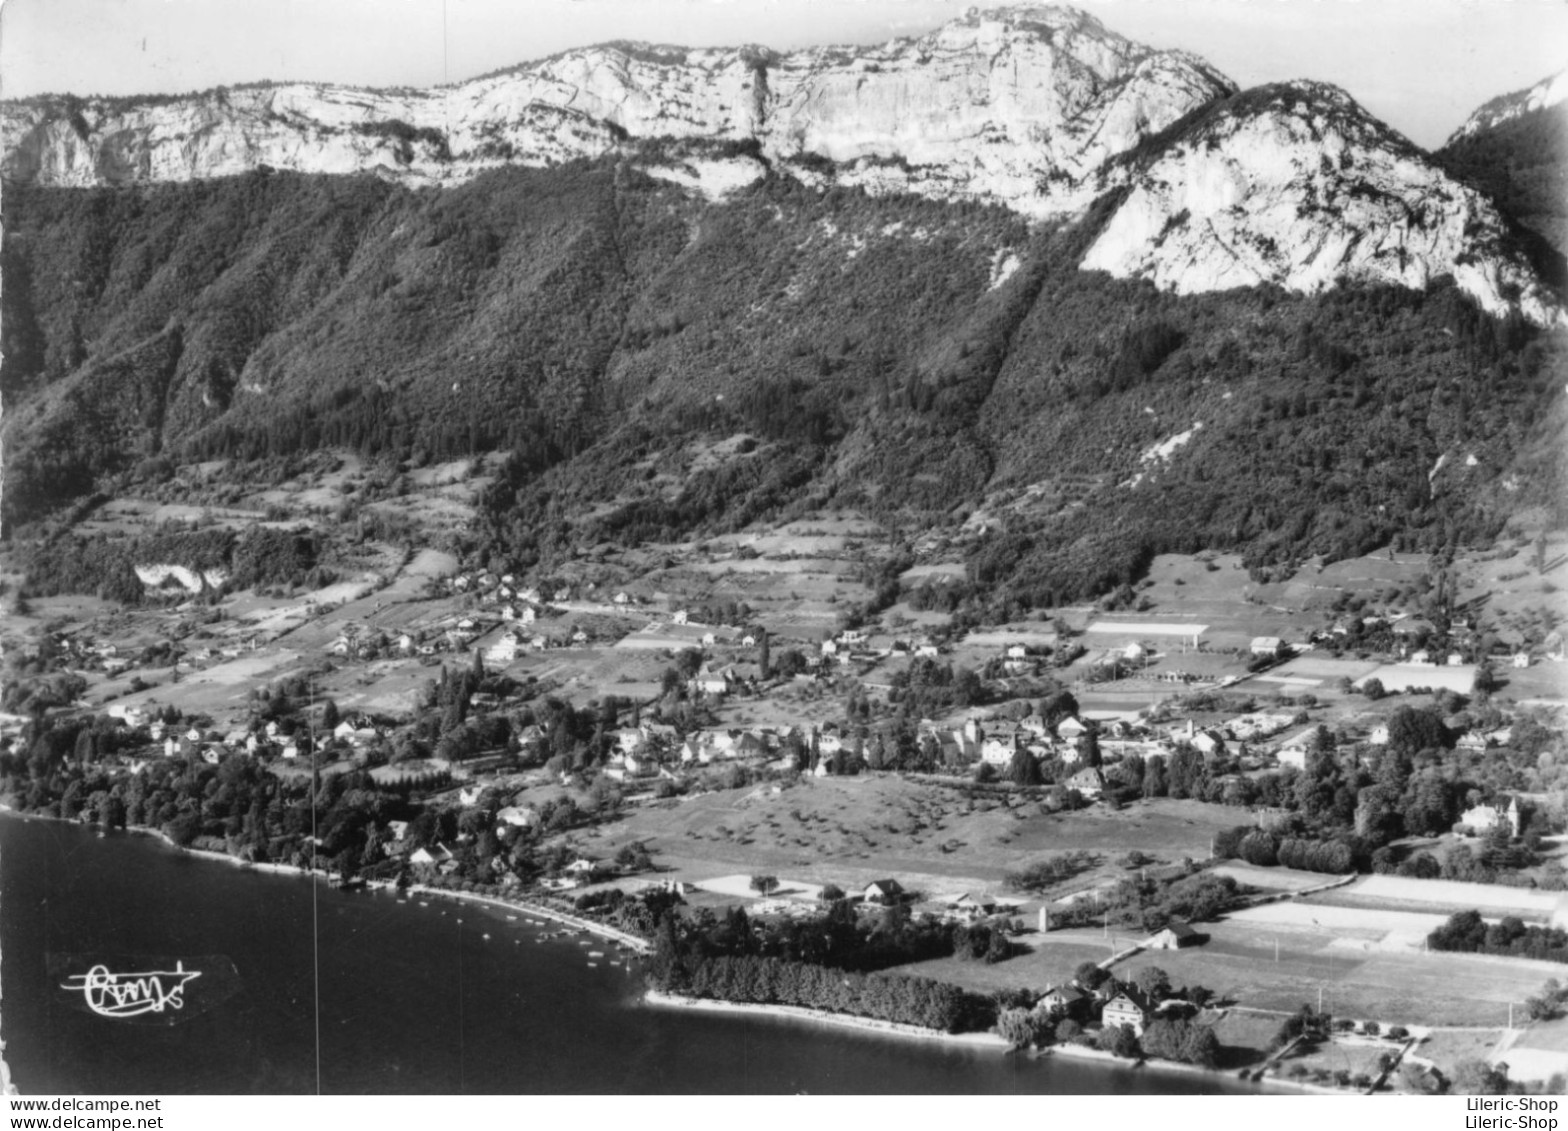 VEYRIER-du-LAC (Hte-Savoie)   Vue Panoramique  Cpsm GF 1961 - Veyrier